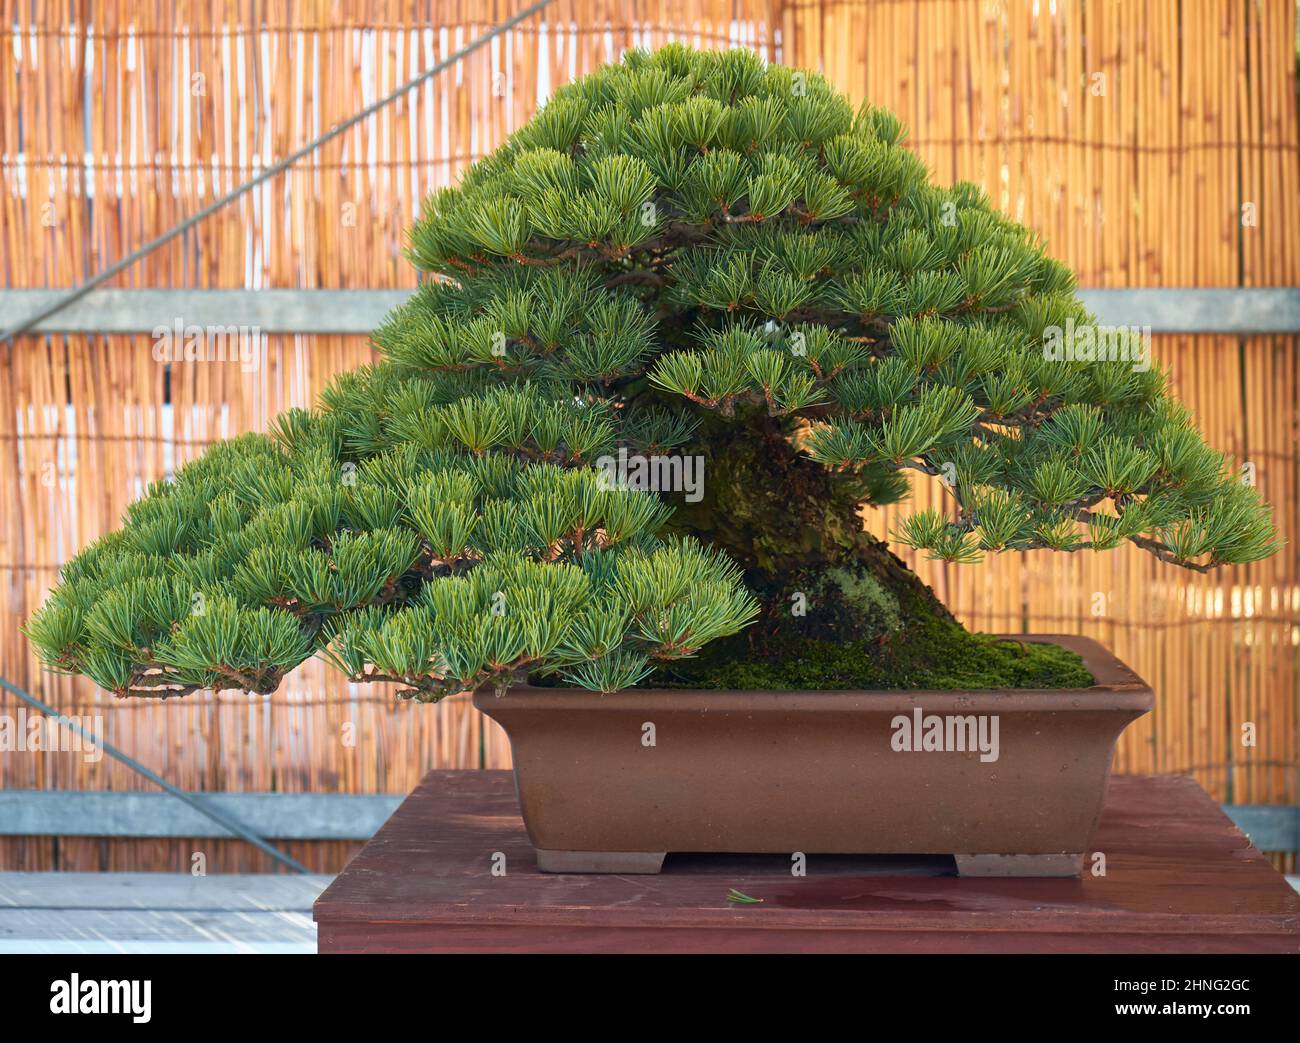 Nagoya, Japon - 20 octobre 2019 : vue sur l'arbre bonsaï décoratif de PIN noir de Japanes lors du spectacle annuel du château de Nagoya Bonsai. Nagoya. Japon Banque D'Images